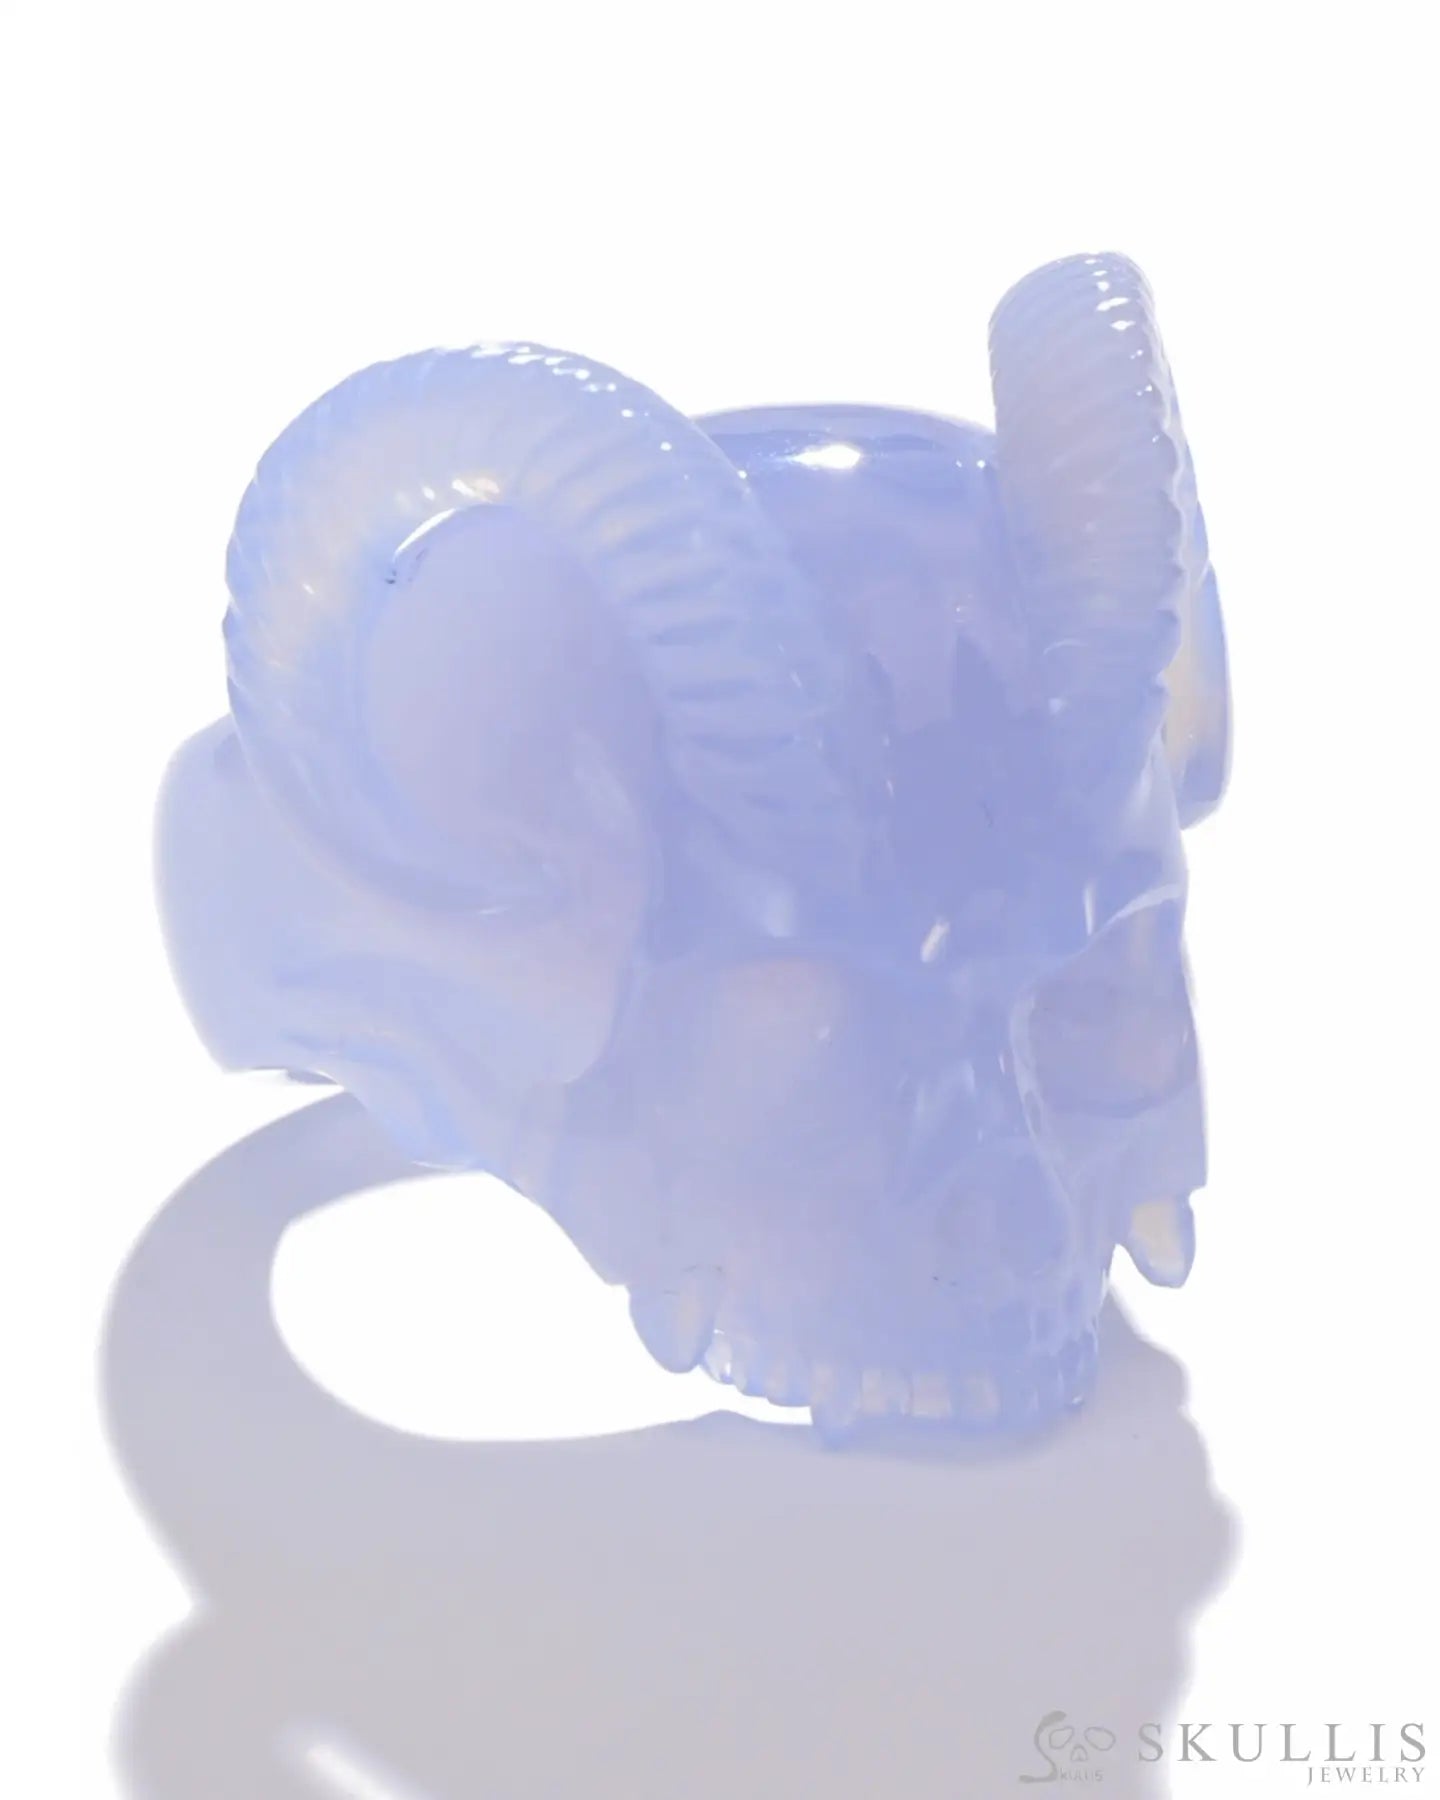 Gem Skull Ring Of Blue Chalcedony Carved Skull Skull Rings